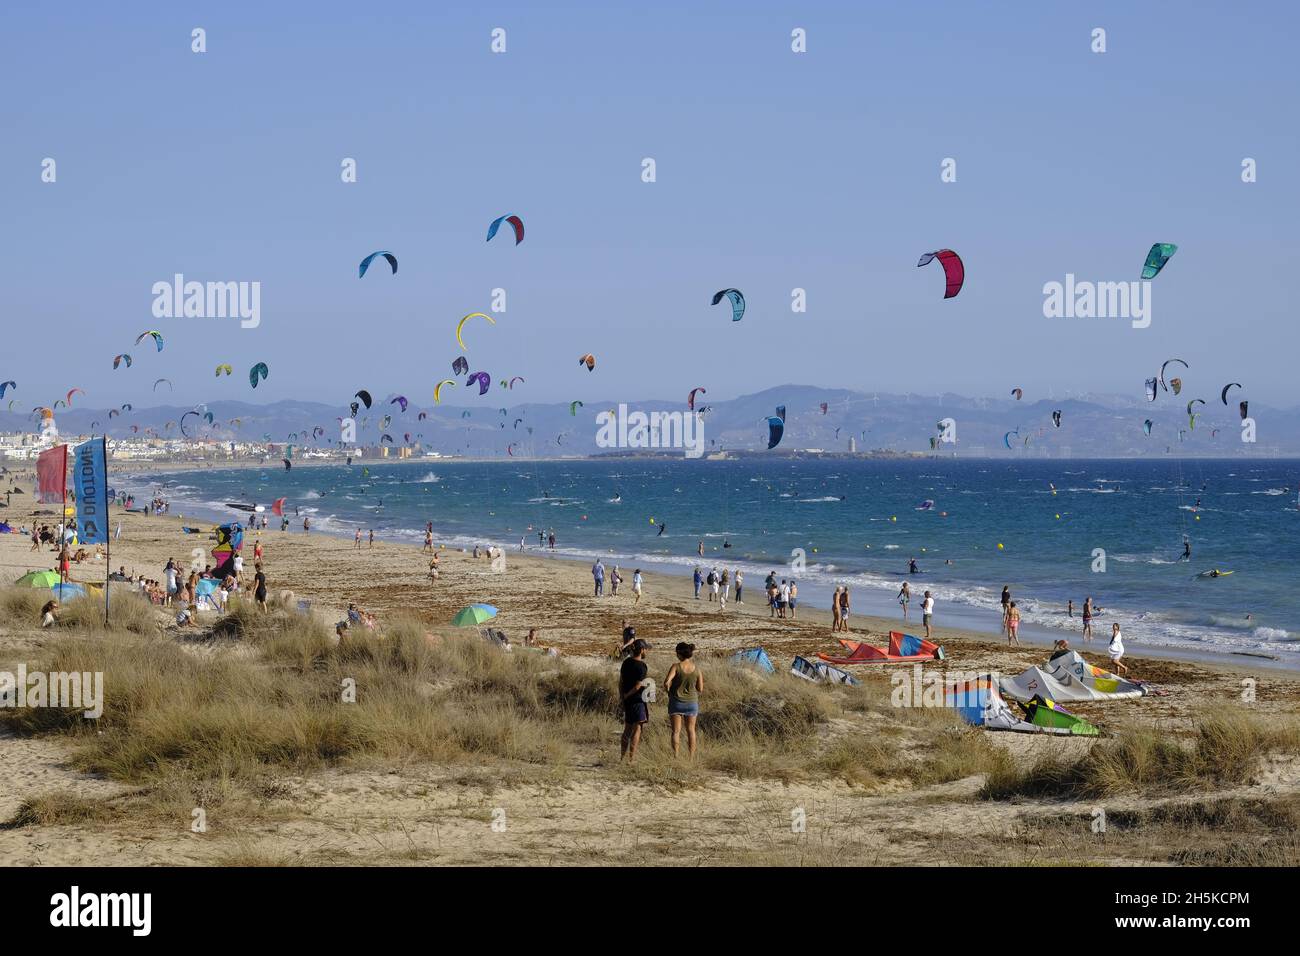 La plage de Los Lances regorge de kitesurfers.Tarifa, Costa de la Luz, province de Cadix, Andalousie, Espagne Banque D'Images